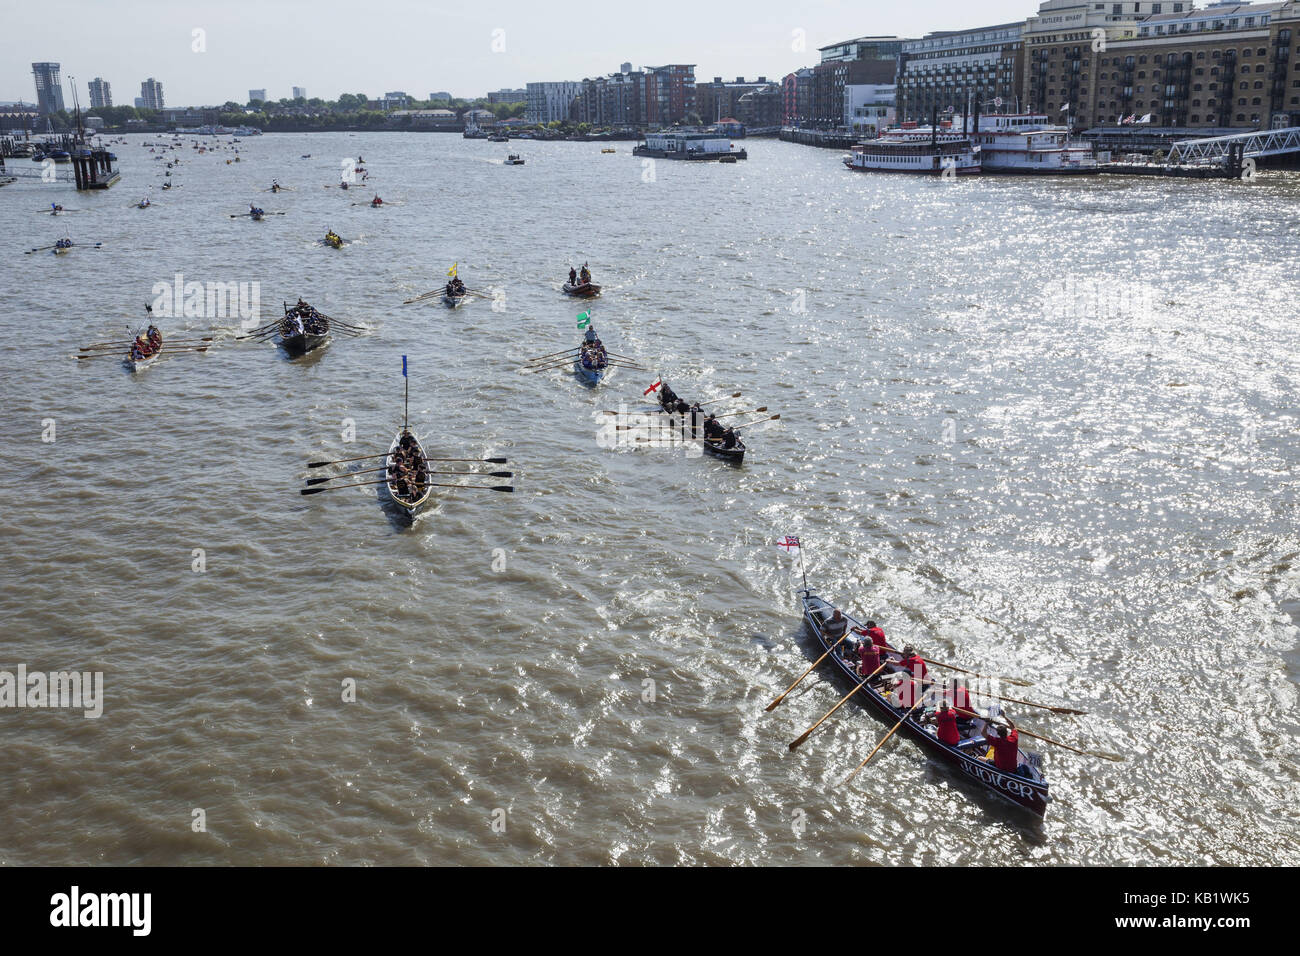 England, London, traditionelle Regatta, Great River race, Stockfoto